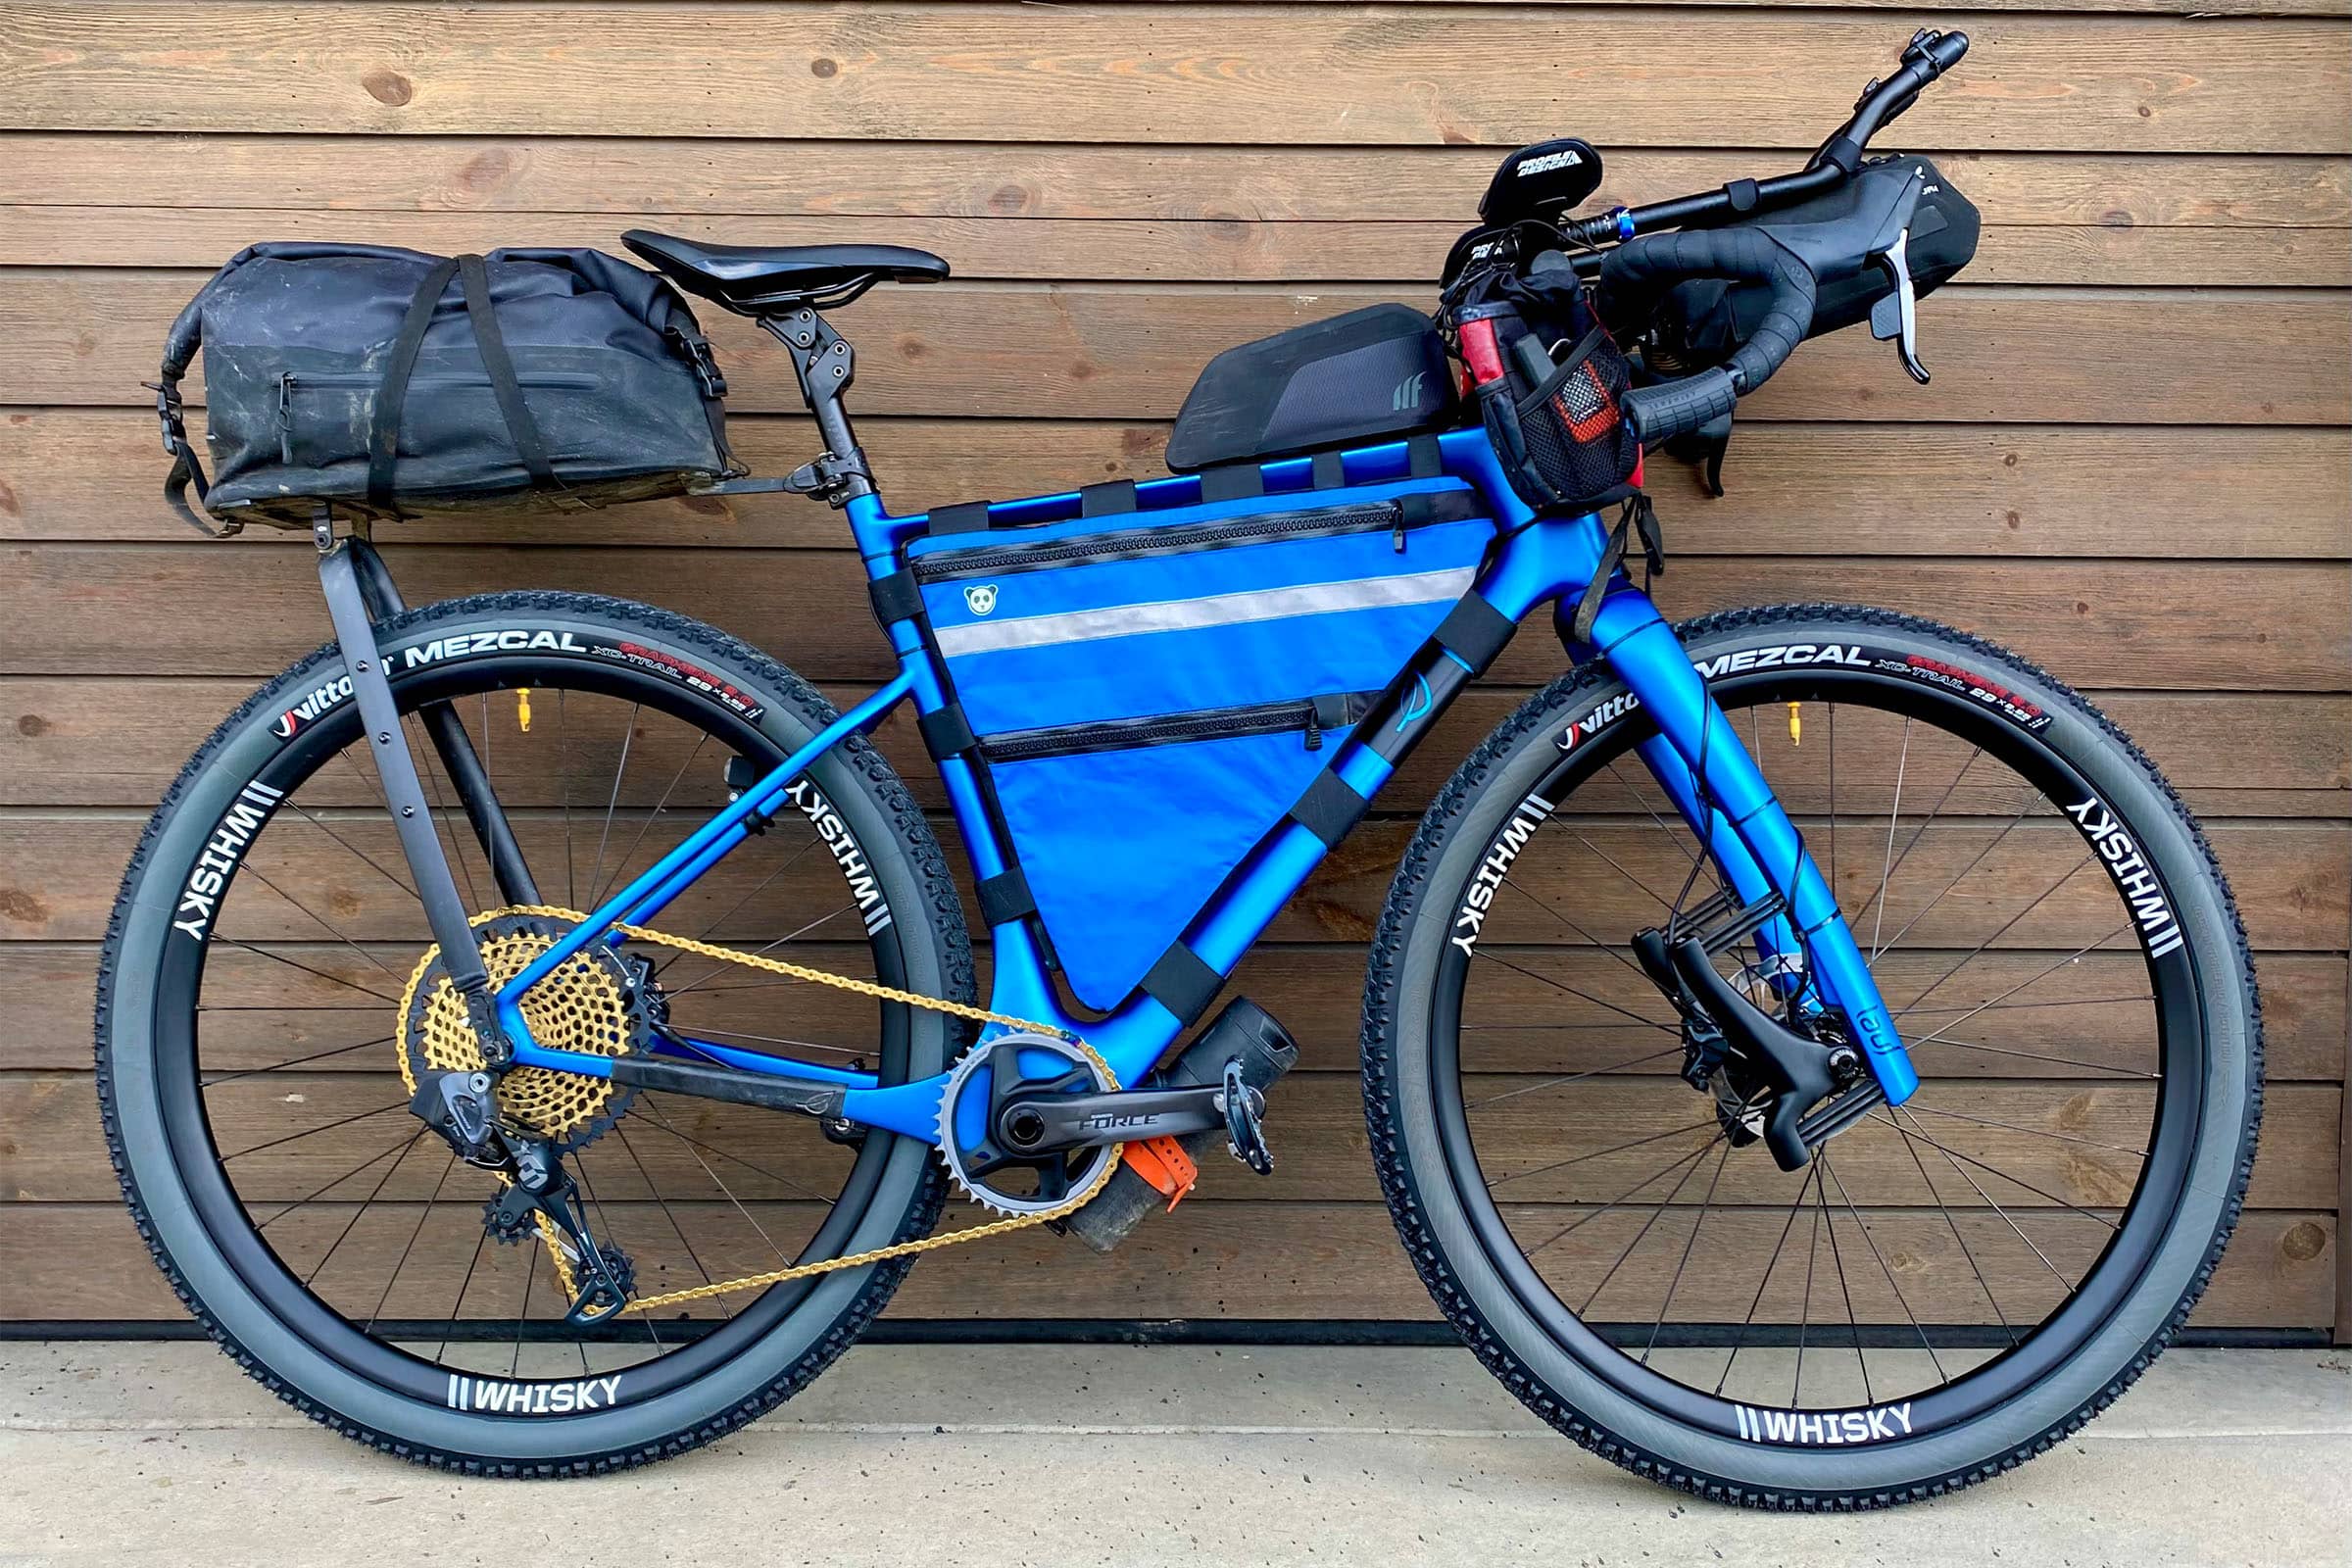 Porte-bagages, mini-racks légers pour le Bikepacking 